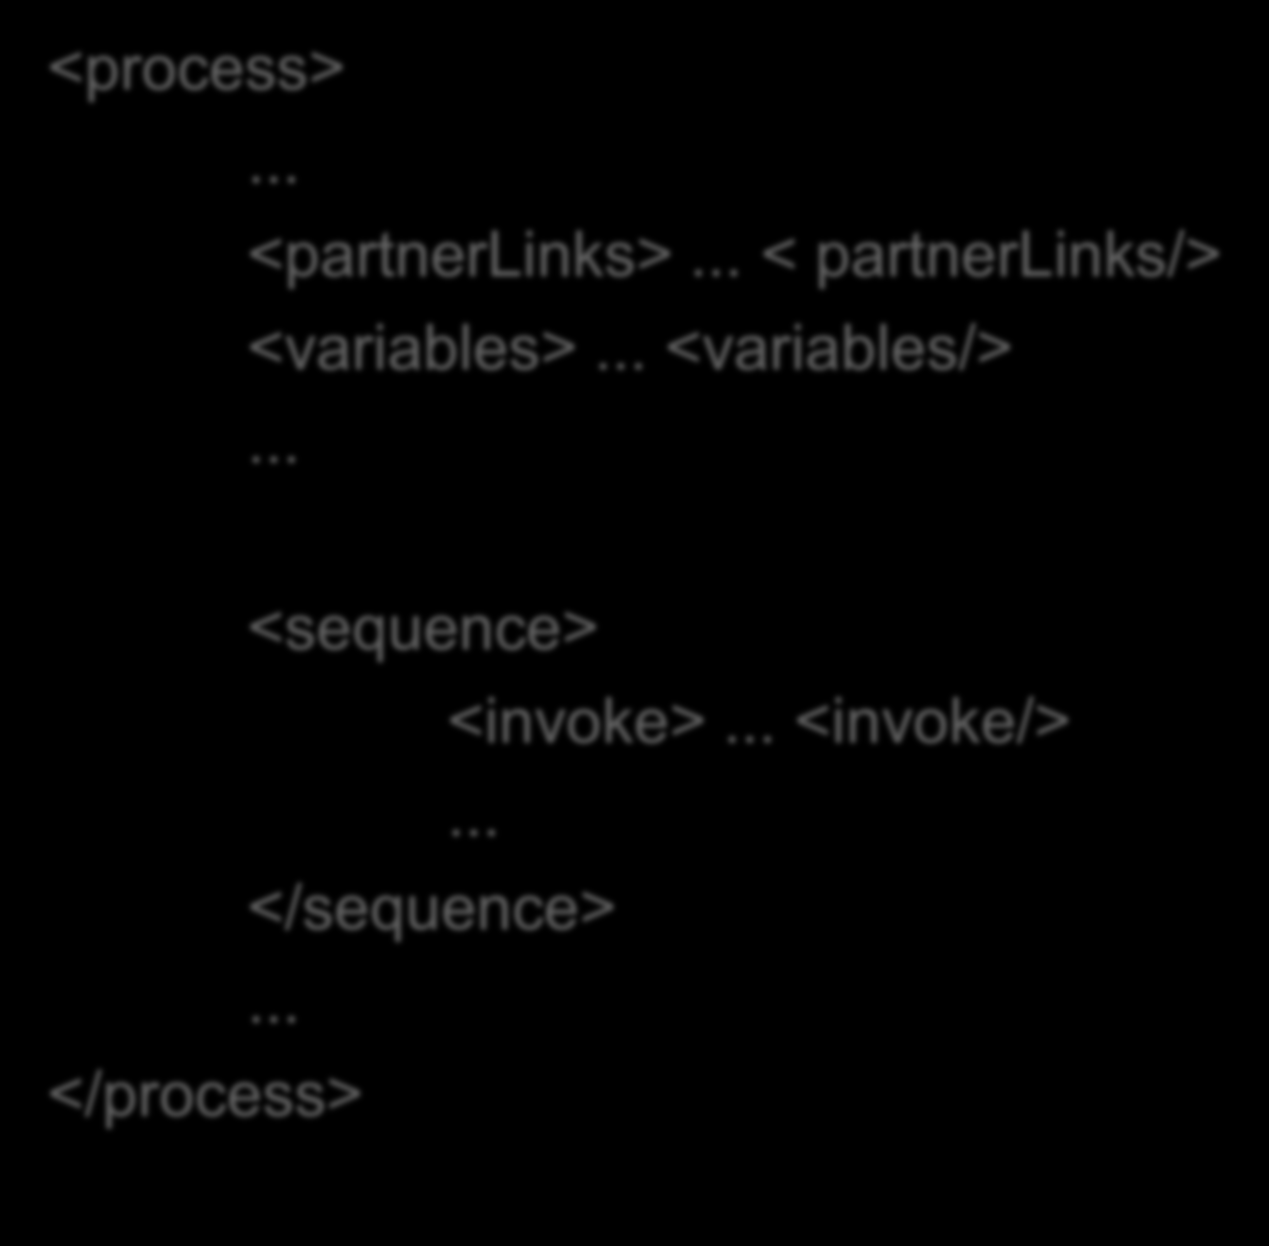 WS-BPEL: Orquestração em XML <process>... <partnerlinks>.